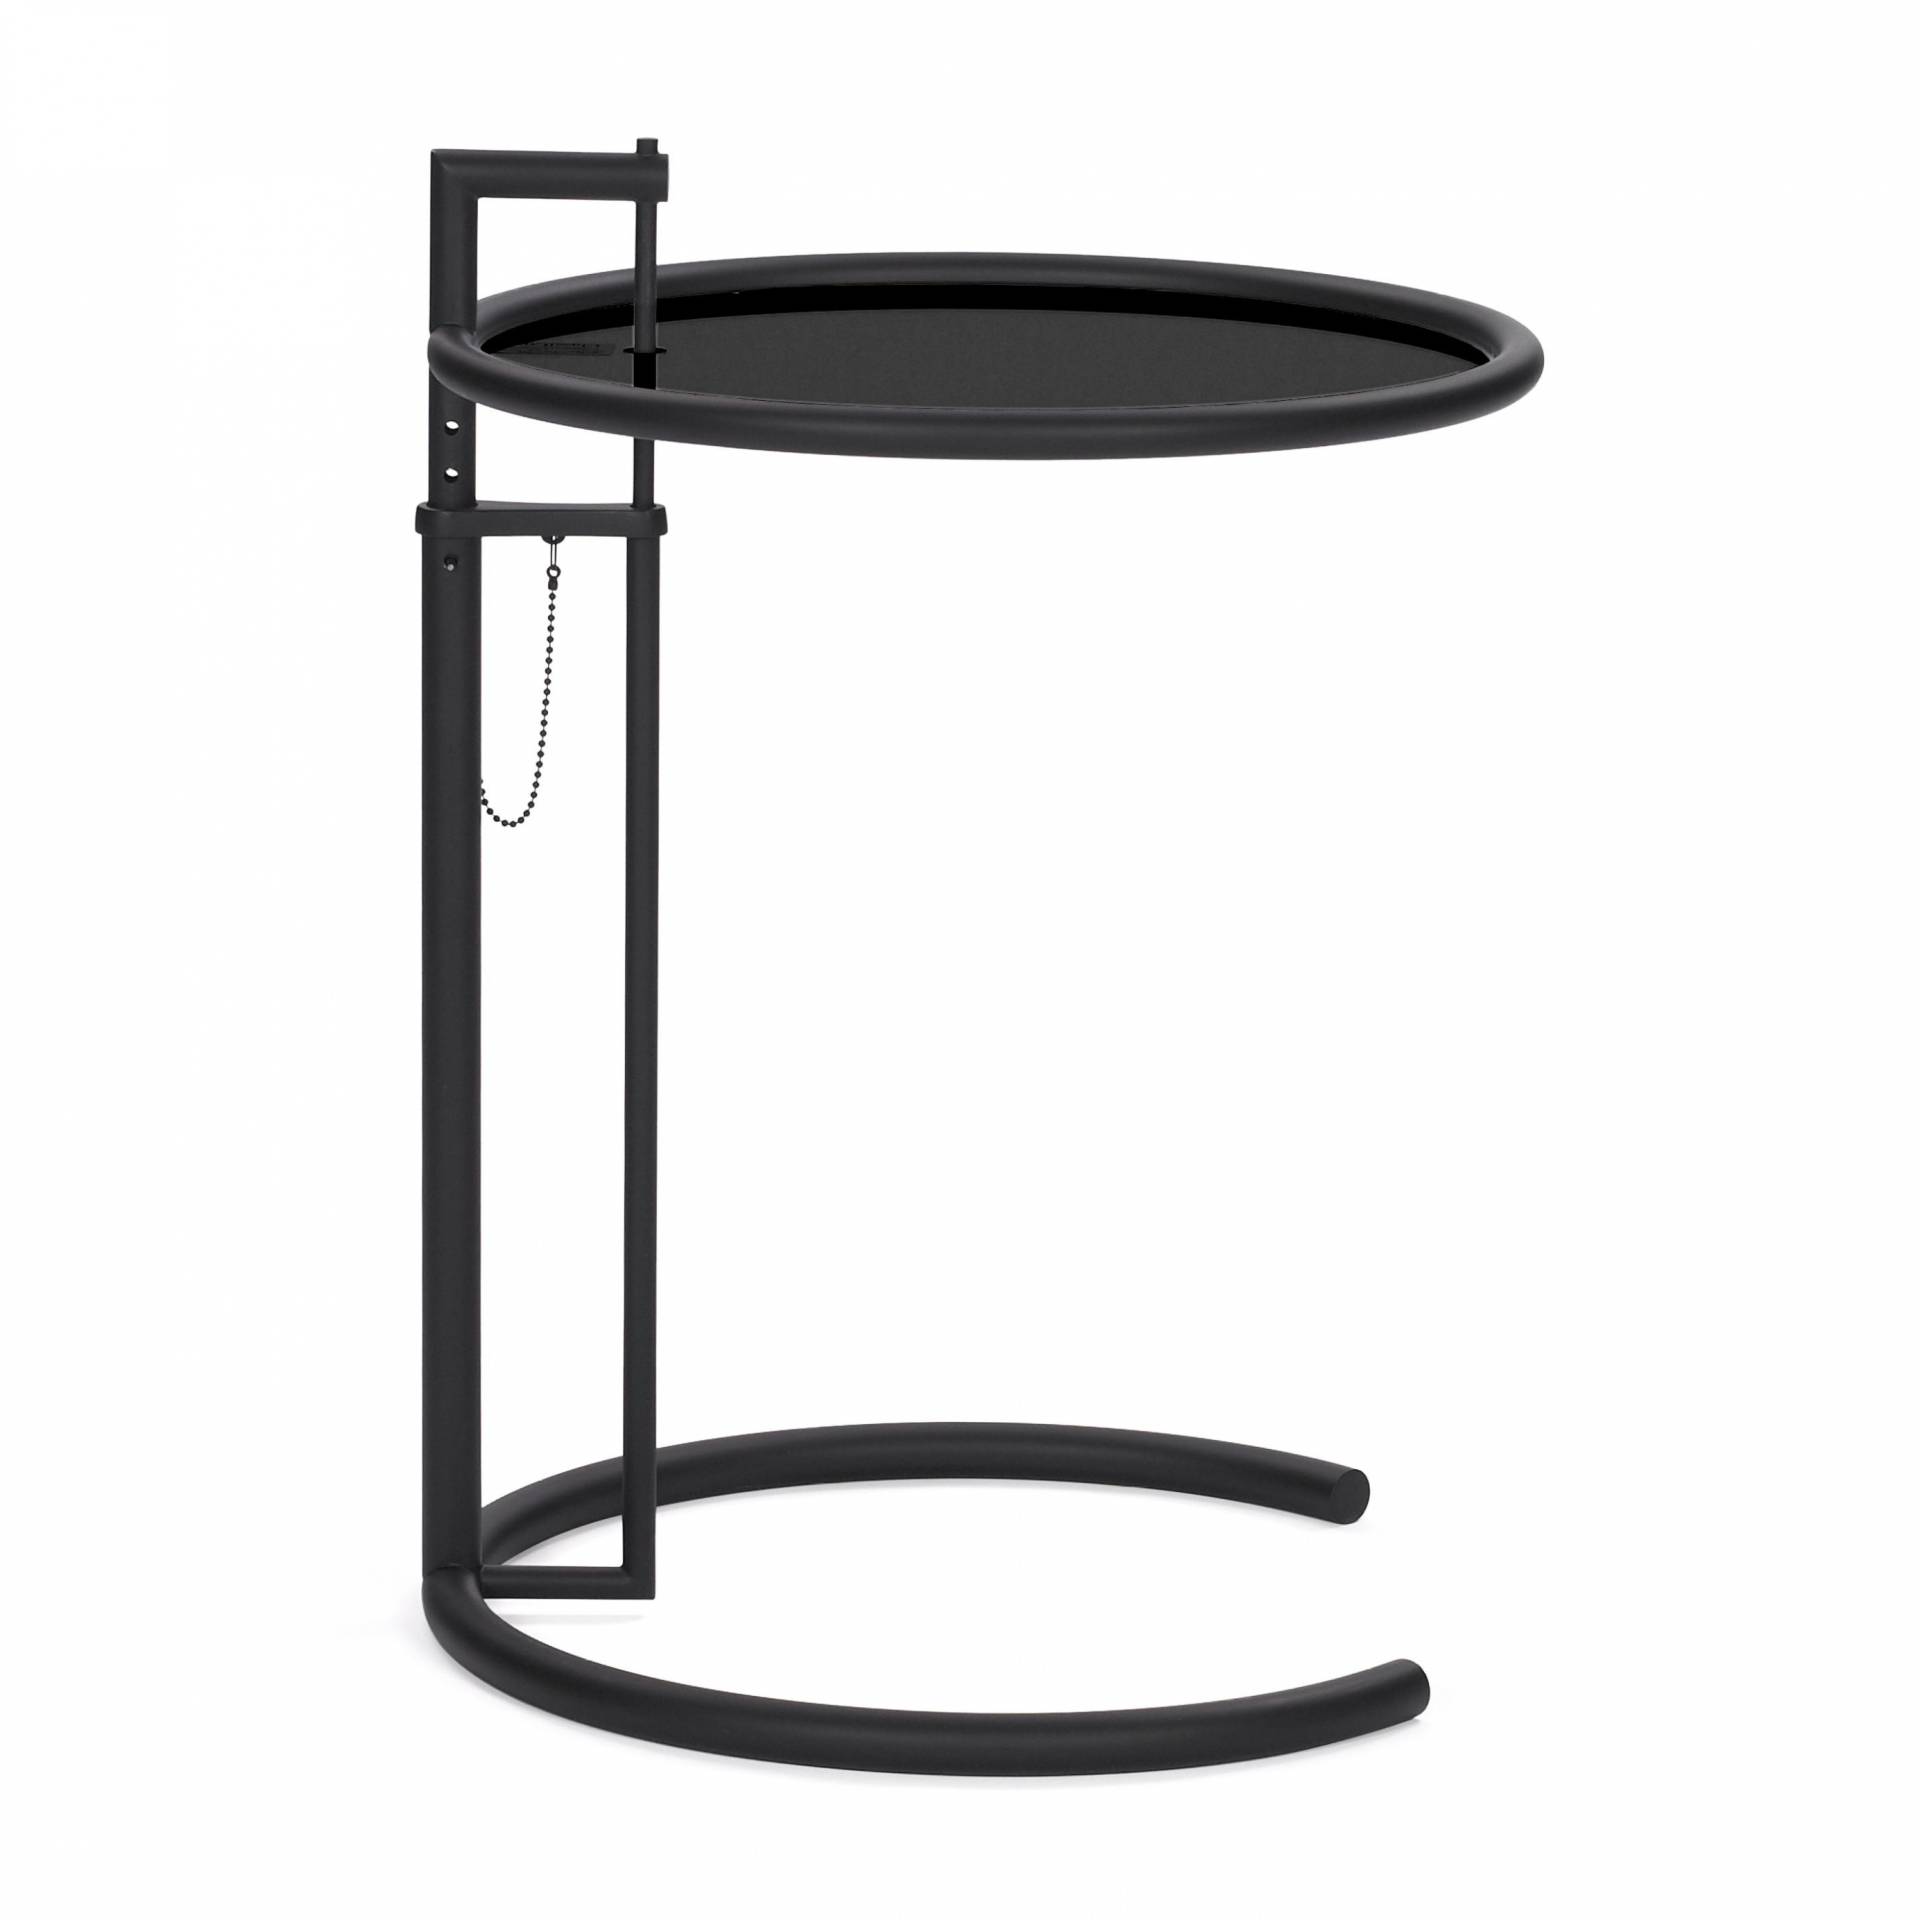 ClassiCon - Adjustable Table E 1027 Black Version - schwarz/Metallplatte lackiert/Ø52cm/höhenverstellbar H 64-102cm/Gestell schwarz pulverbeschichtet von ClassiCon